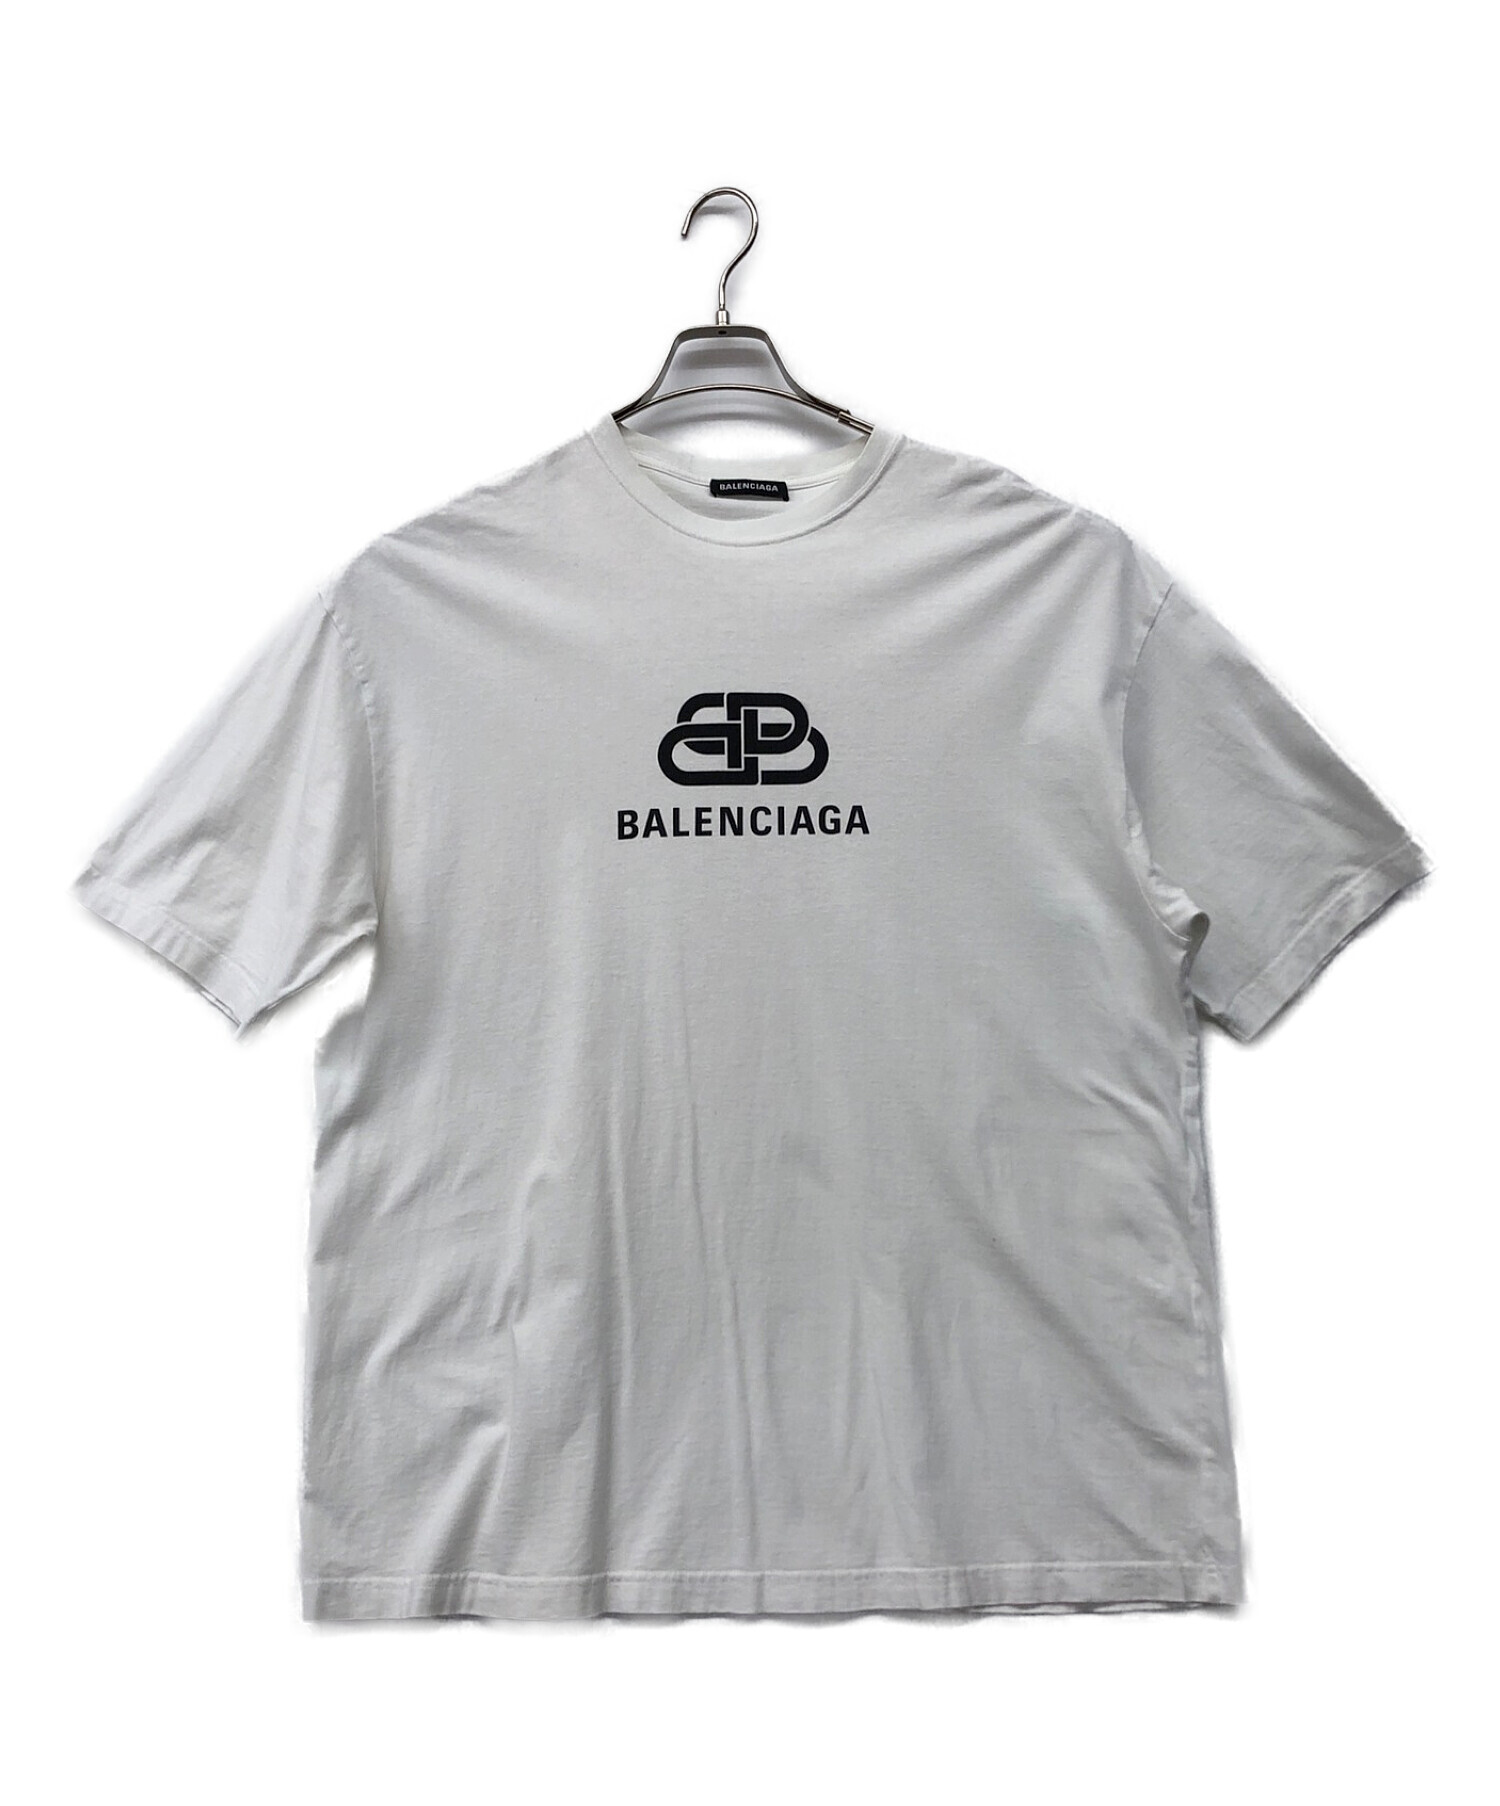 少量生産 値下げ バレンシアガ ロゴTシャツ Sサイズ BALENCIAGA - トップス